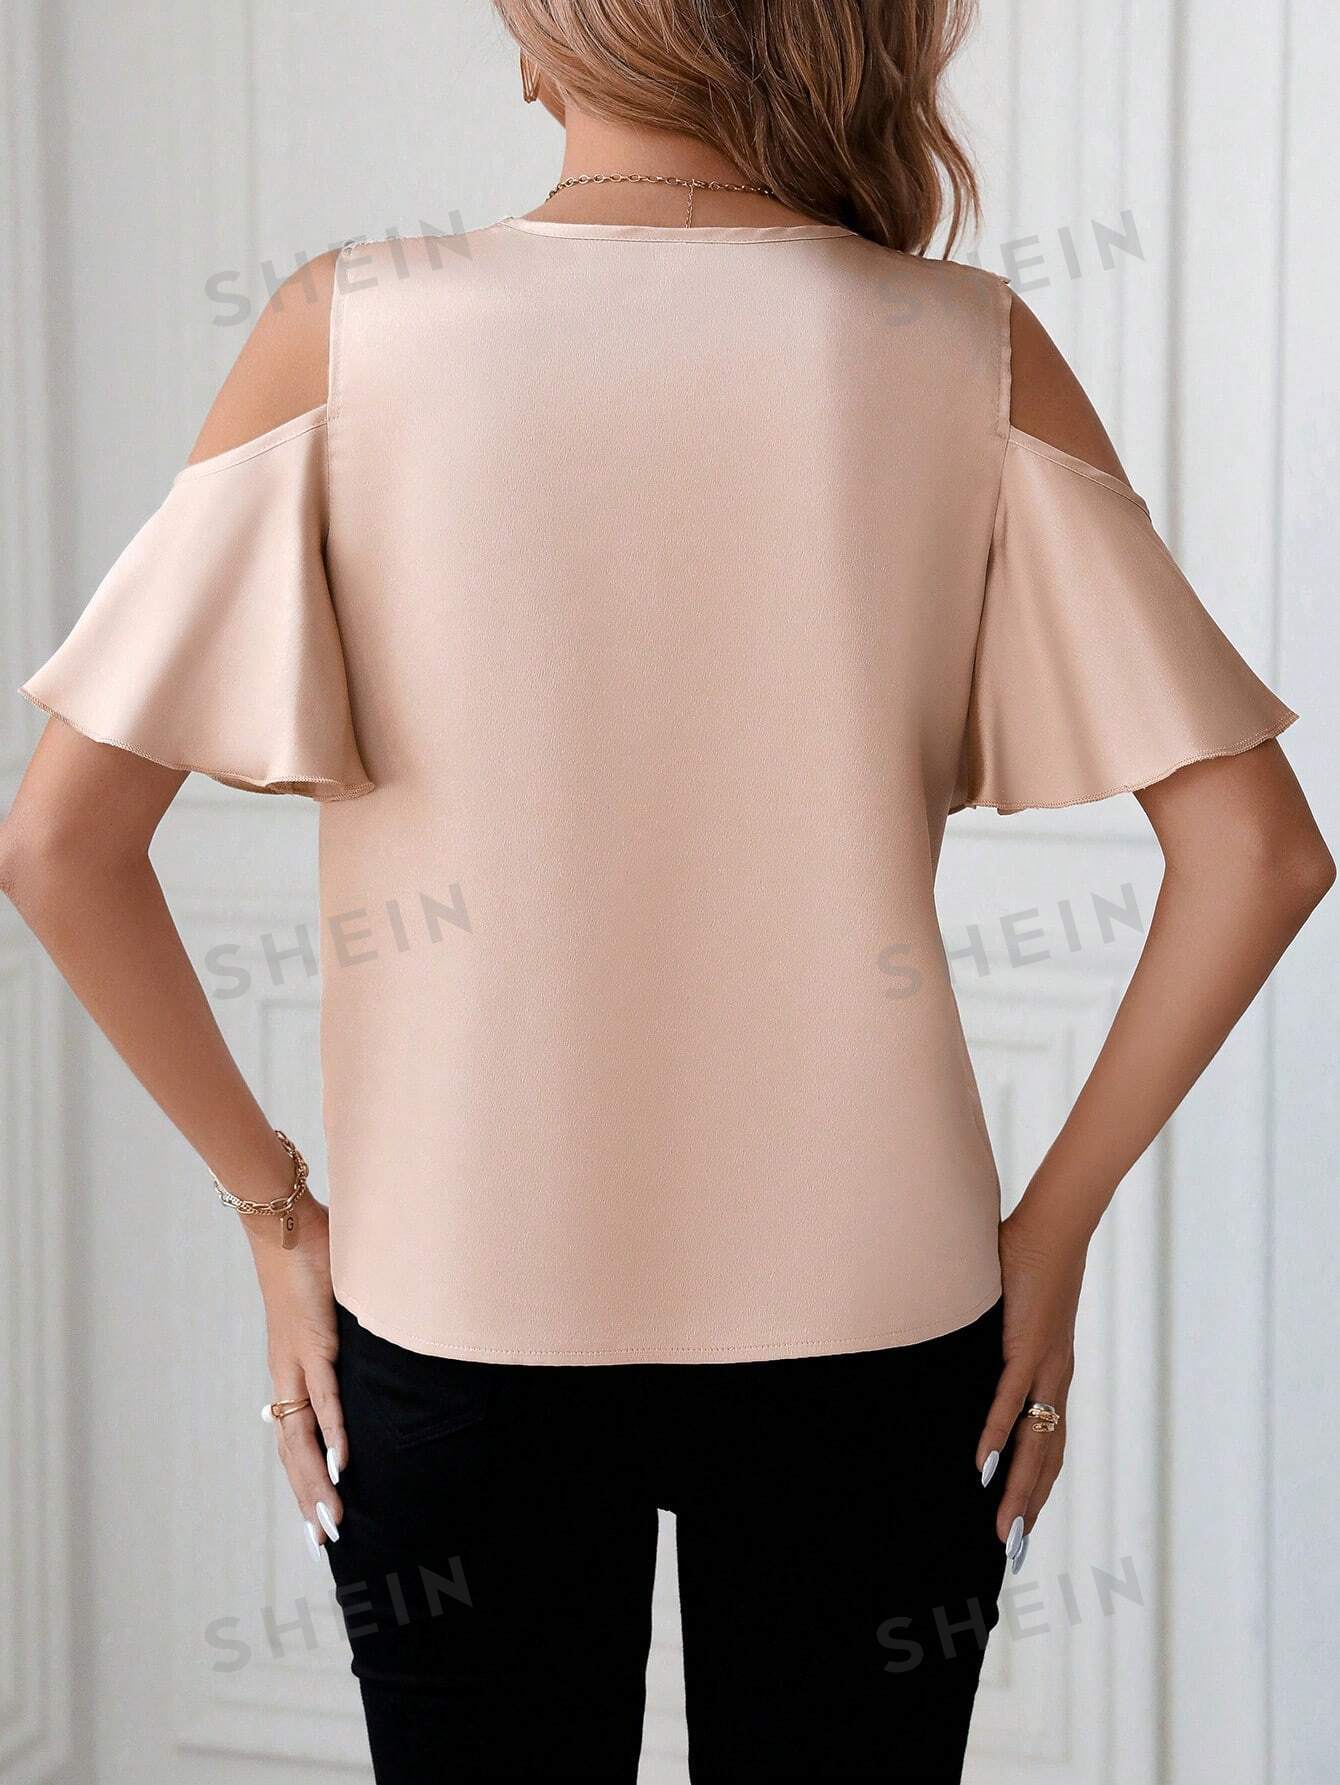 Кружевная лоскутная блузка с открытыми плечами, хаки женская шифоновая плотная блузка рубашка большого размера элегантная офисная блузка с открытыми плечами в корейском стиле лето 2019